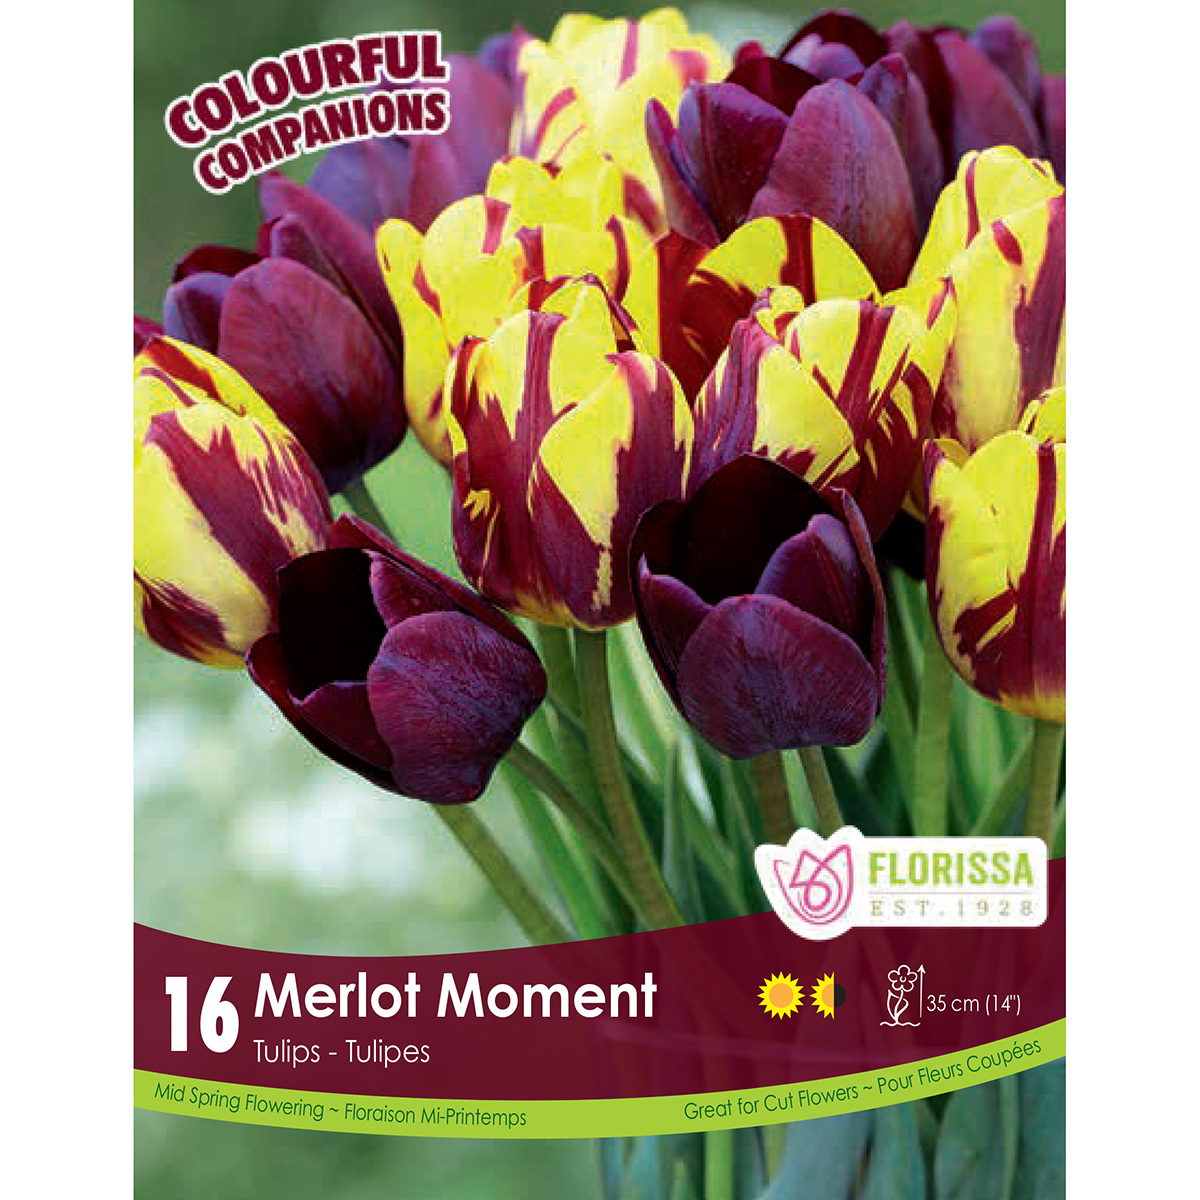 Colourful Companions Tulipa 'Merlot Moment' Bulbs